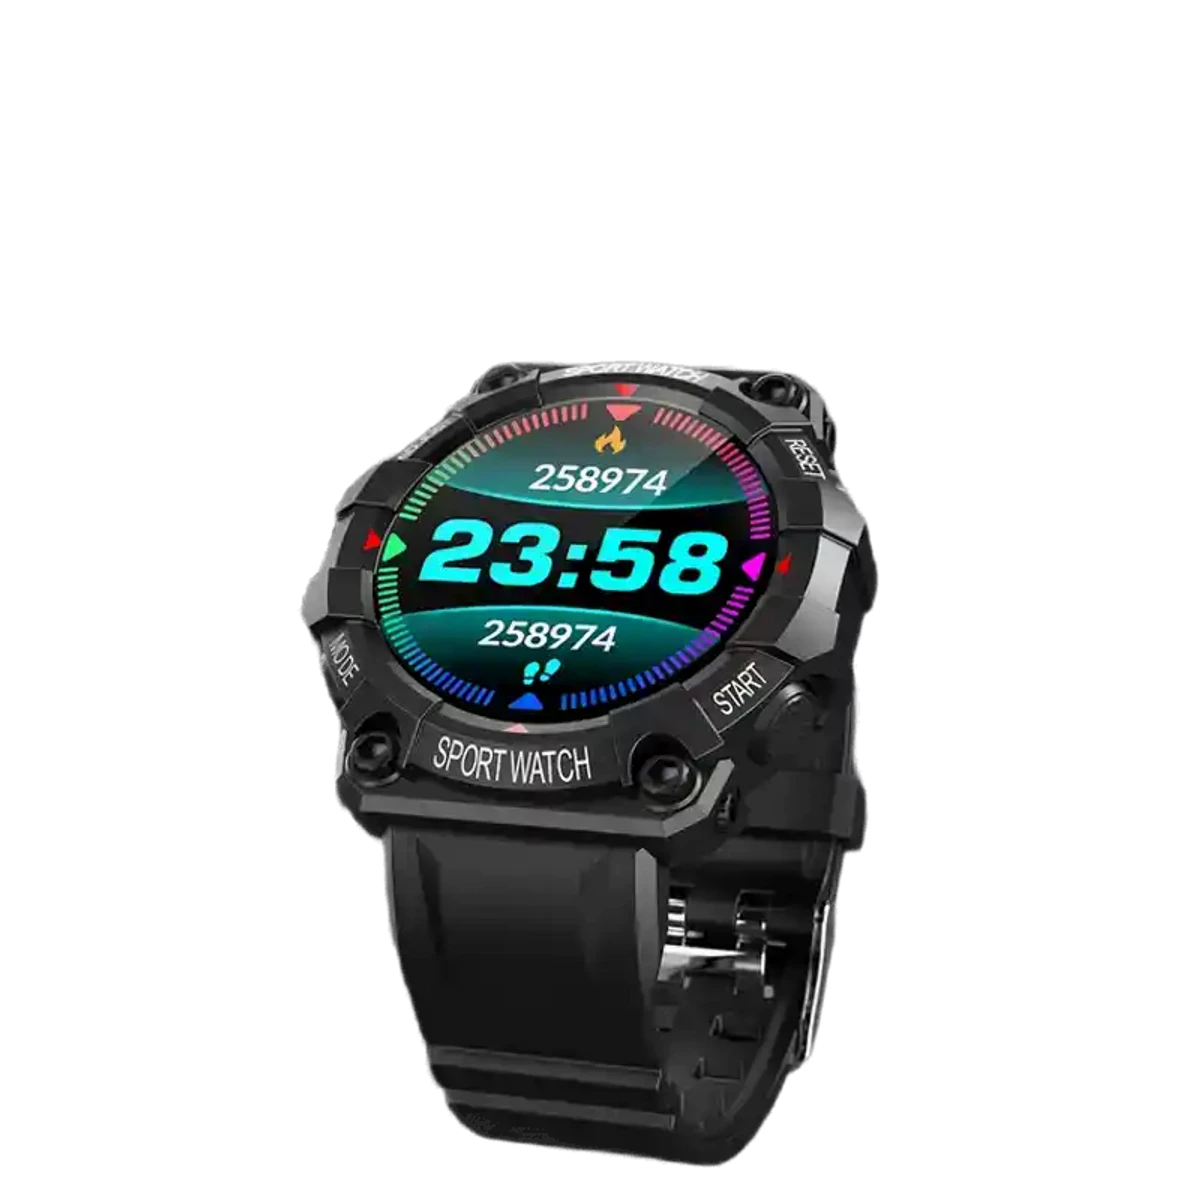 Mixi pro X10 smart watch